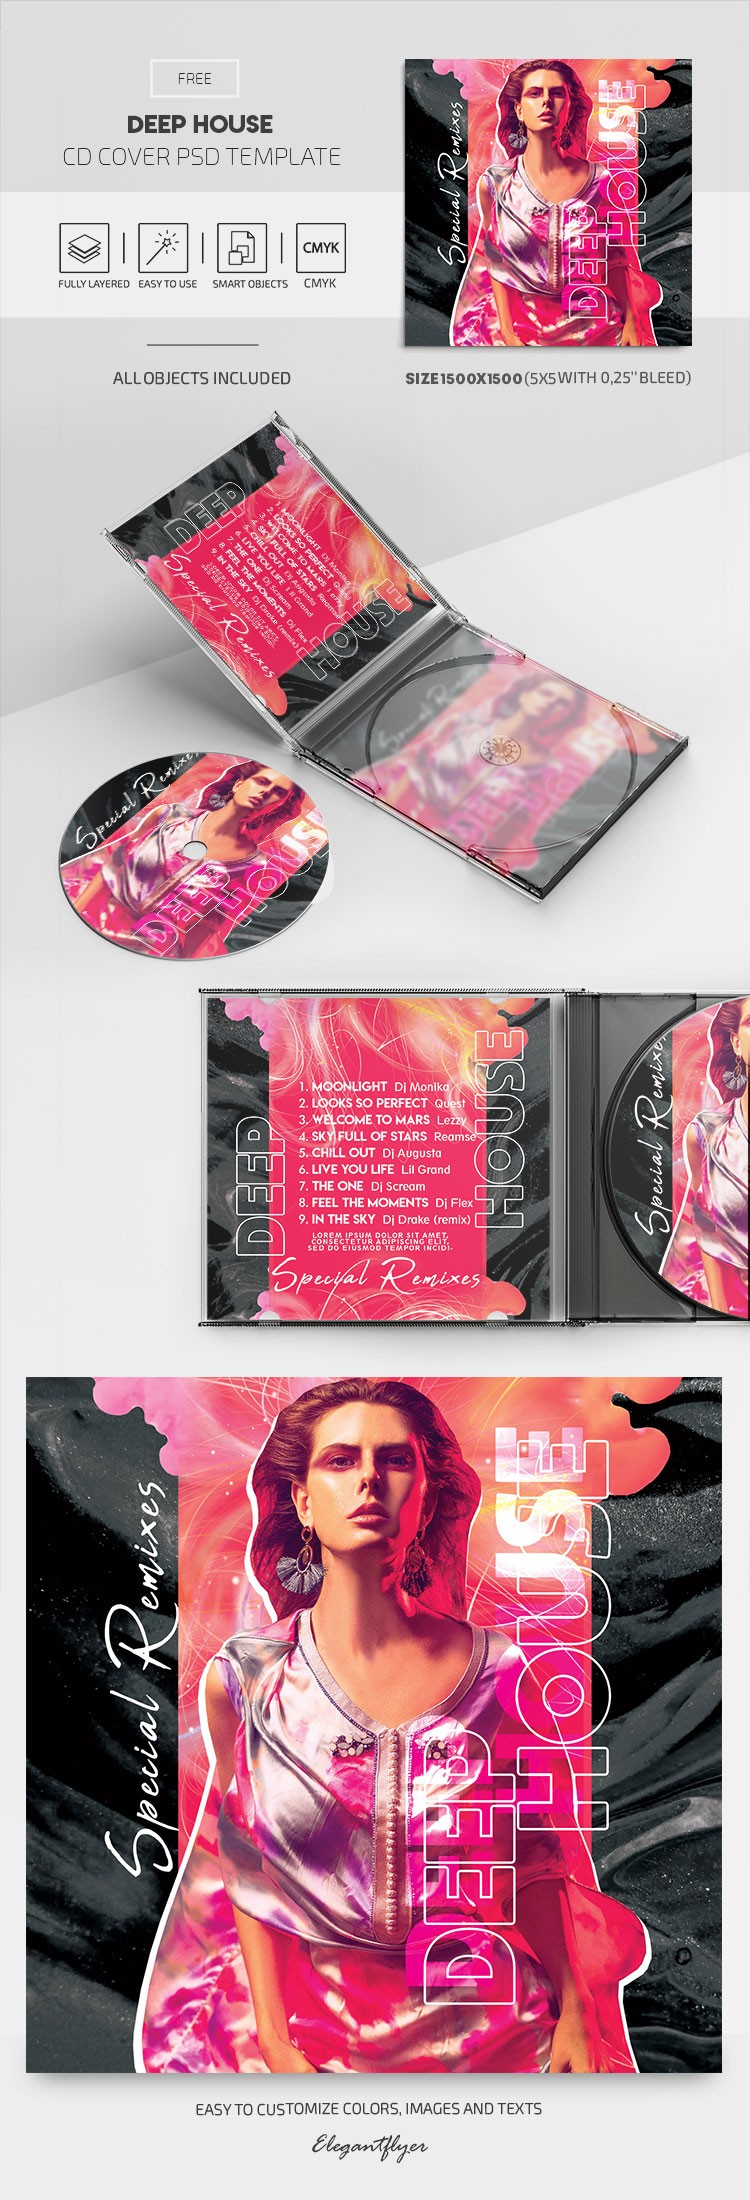 Capa do CD de Deep House. by ElegantFlyer